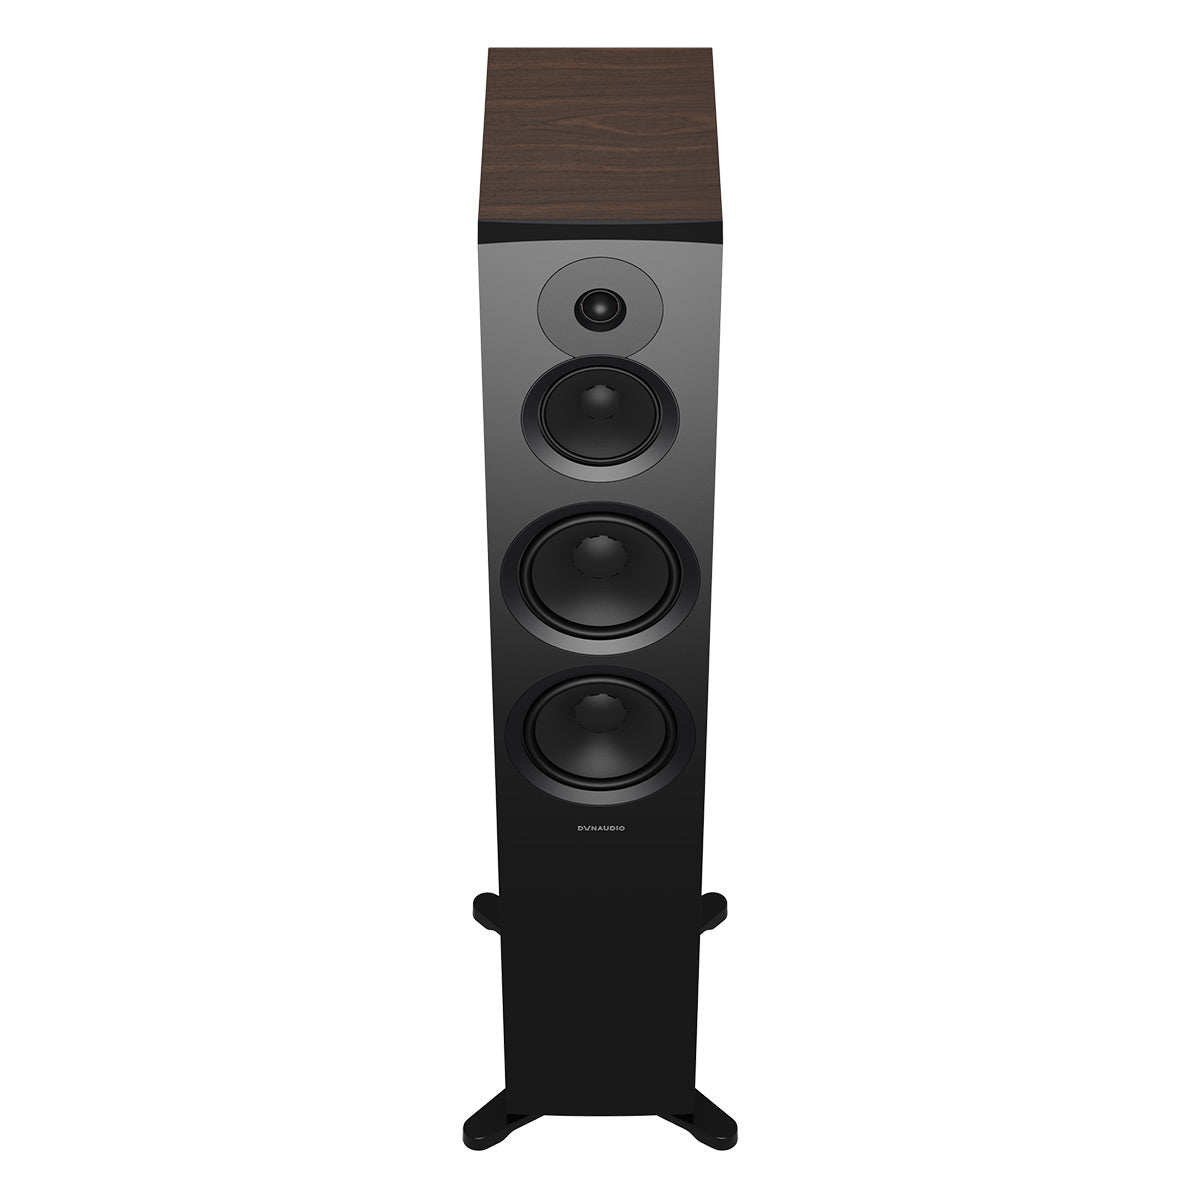 Dynaudio Emit 50 Floorstanding Loudspeakers - Pair (Walnut Wood)